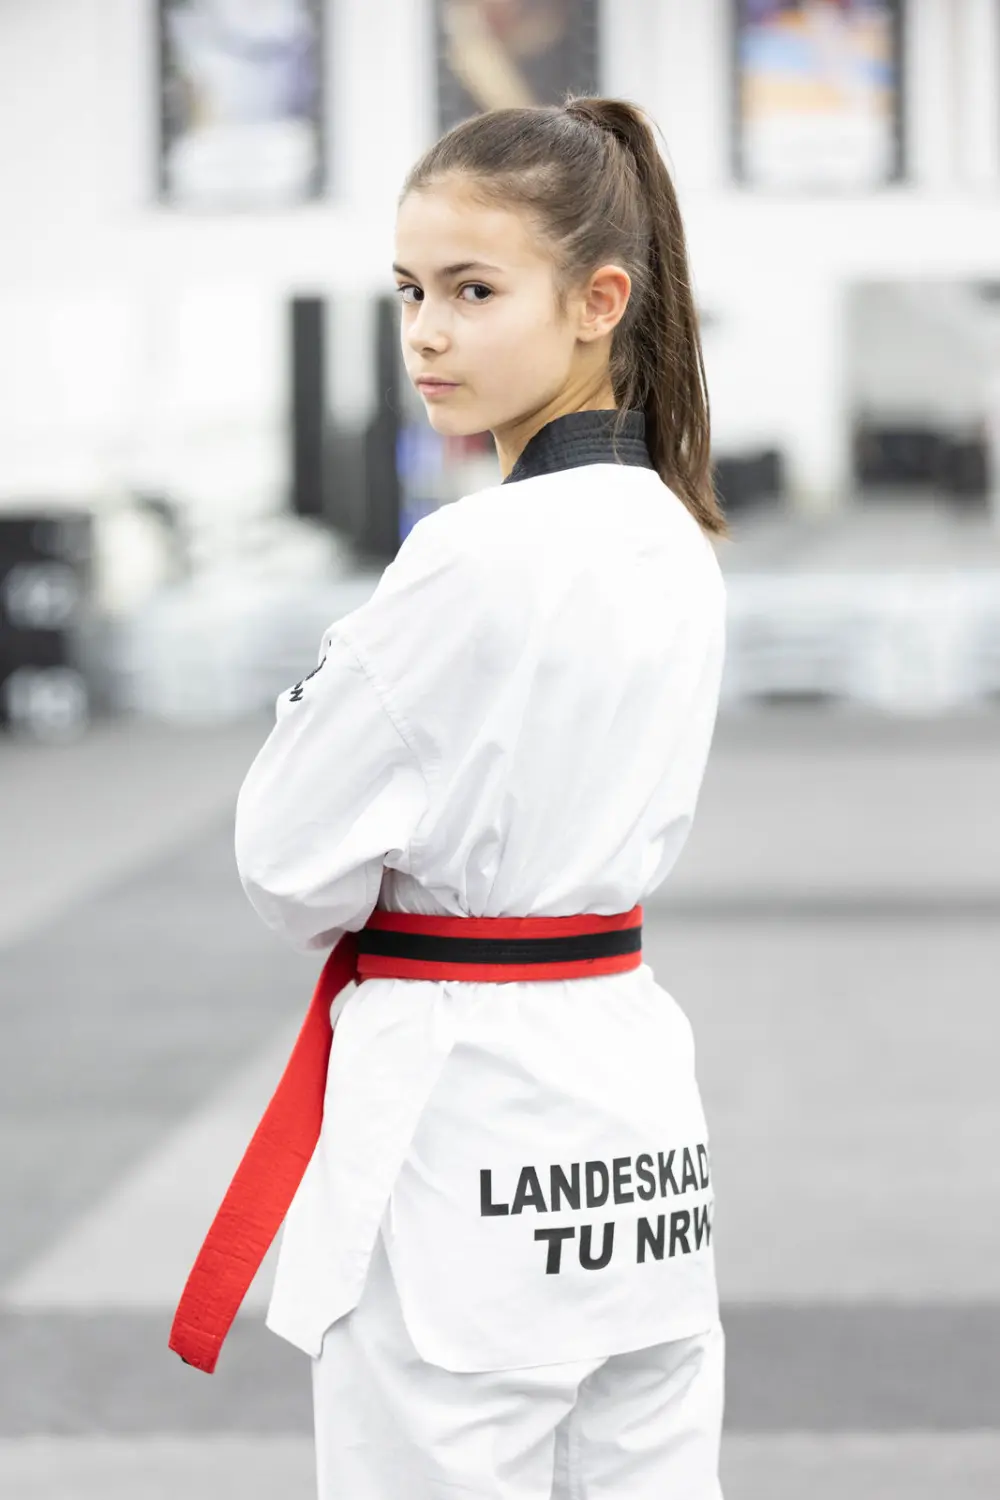 Taekwondo Verein Swisttal